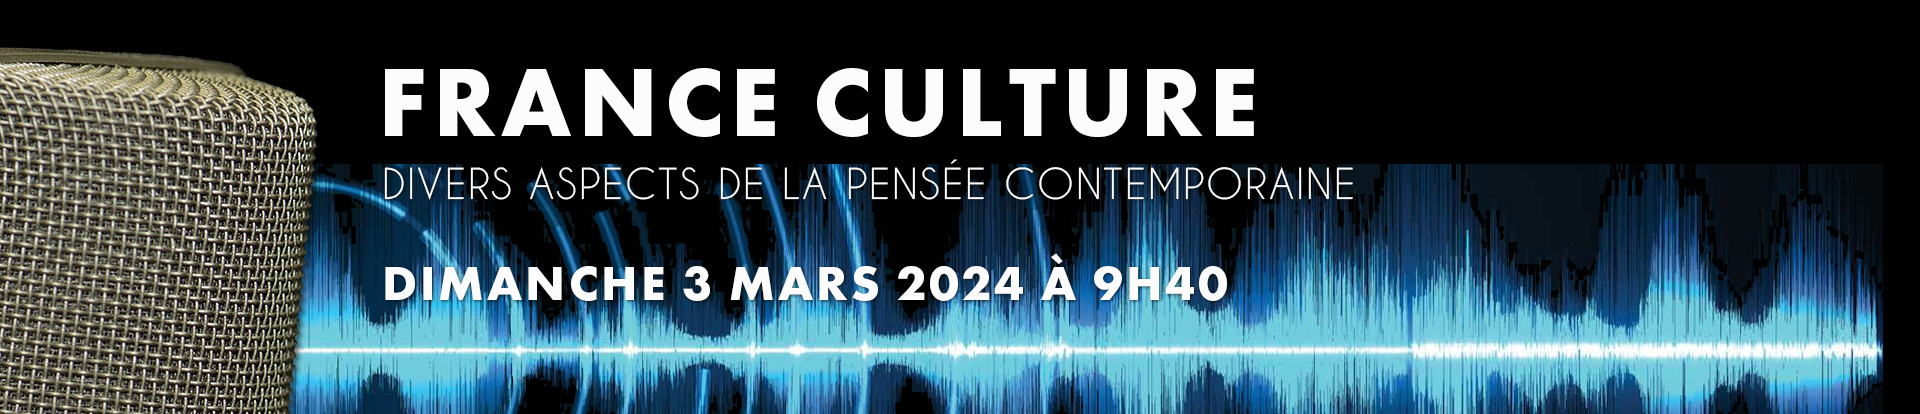 Divers aspects de la pensée contemporaine. Émission dimanche 3 mars 2024 à 9h40 sur France Culture